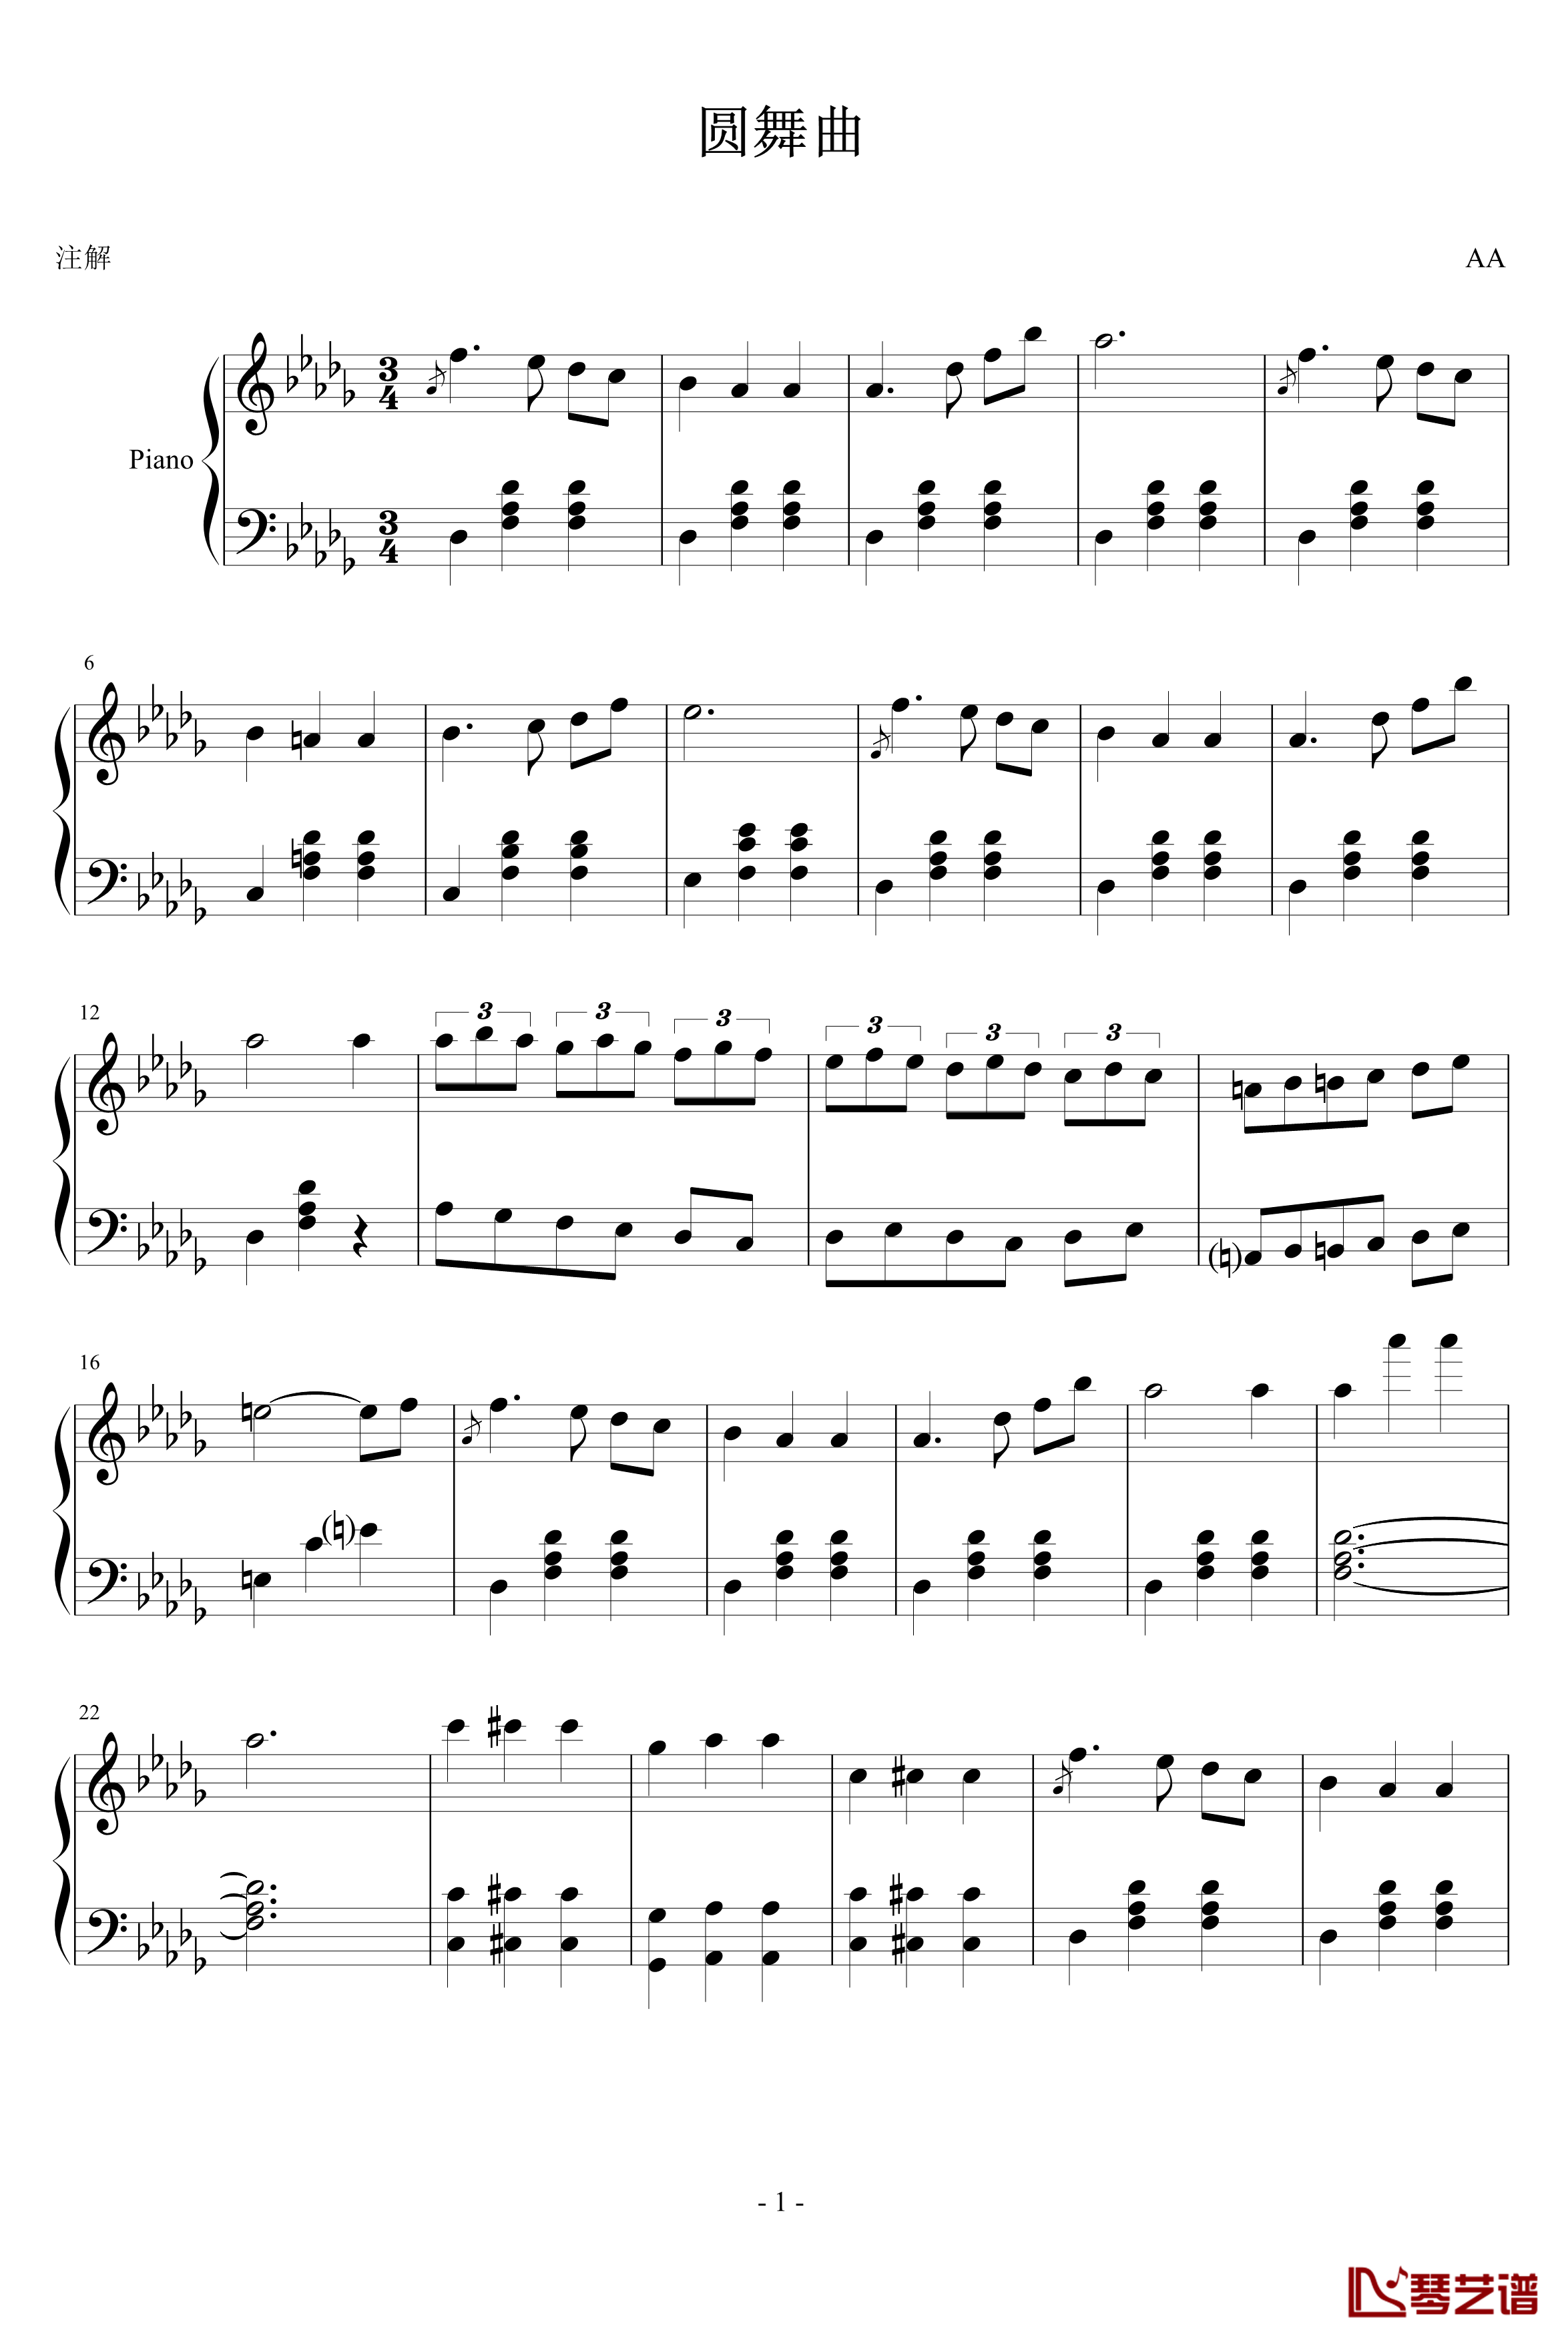 圆舞曲一钢琴谱-A大调的旋律1